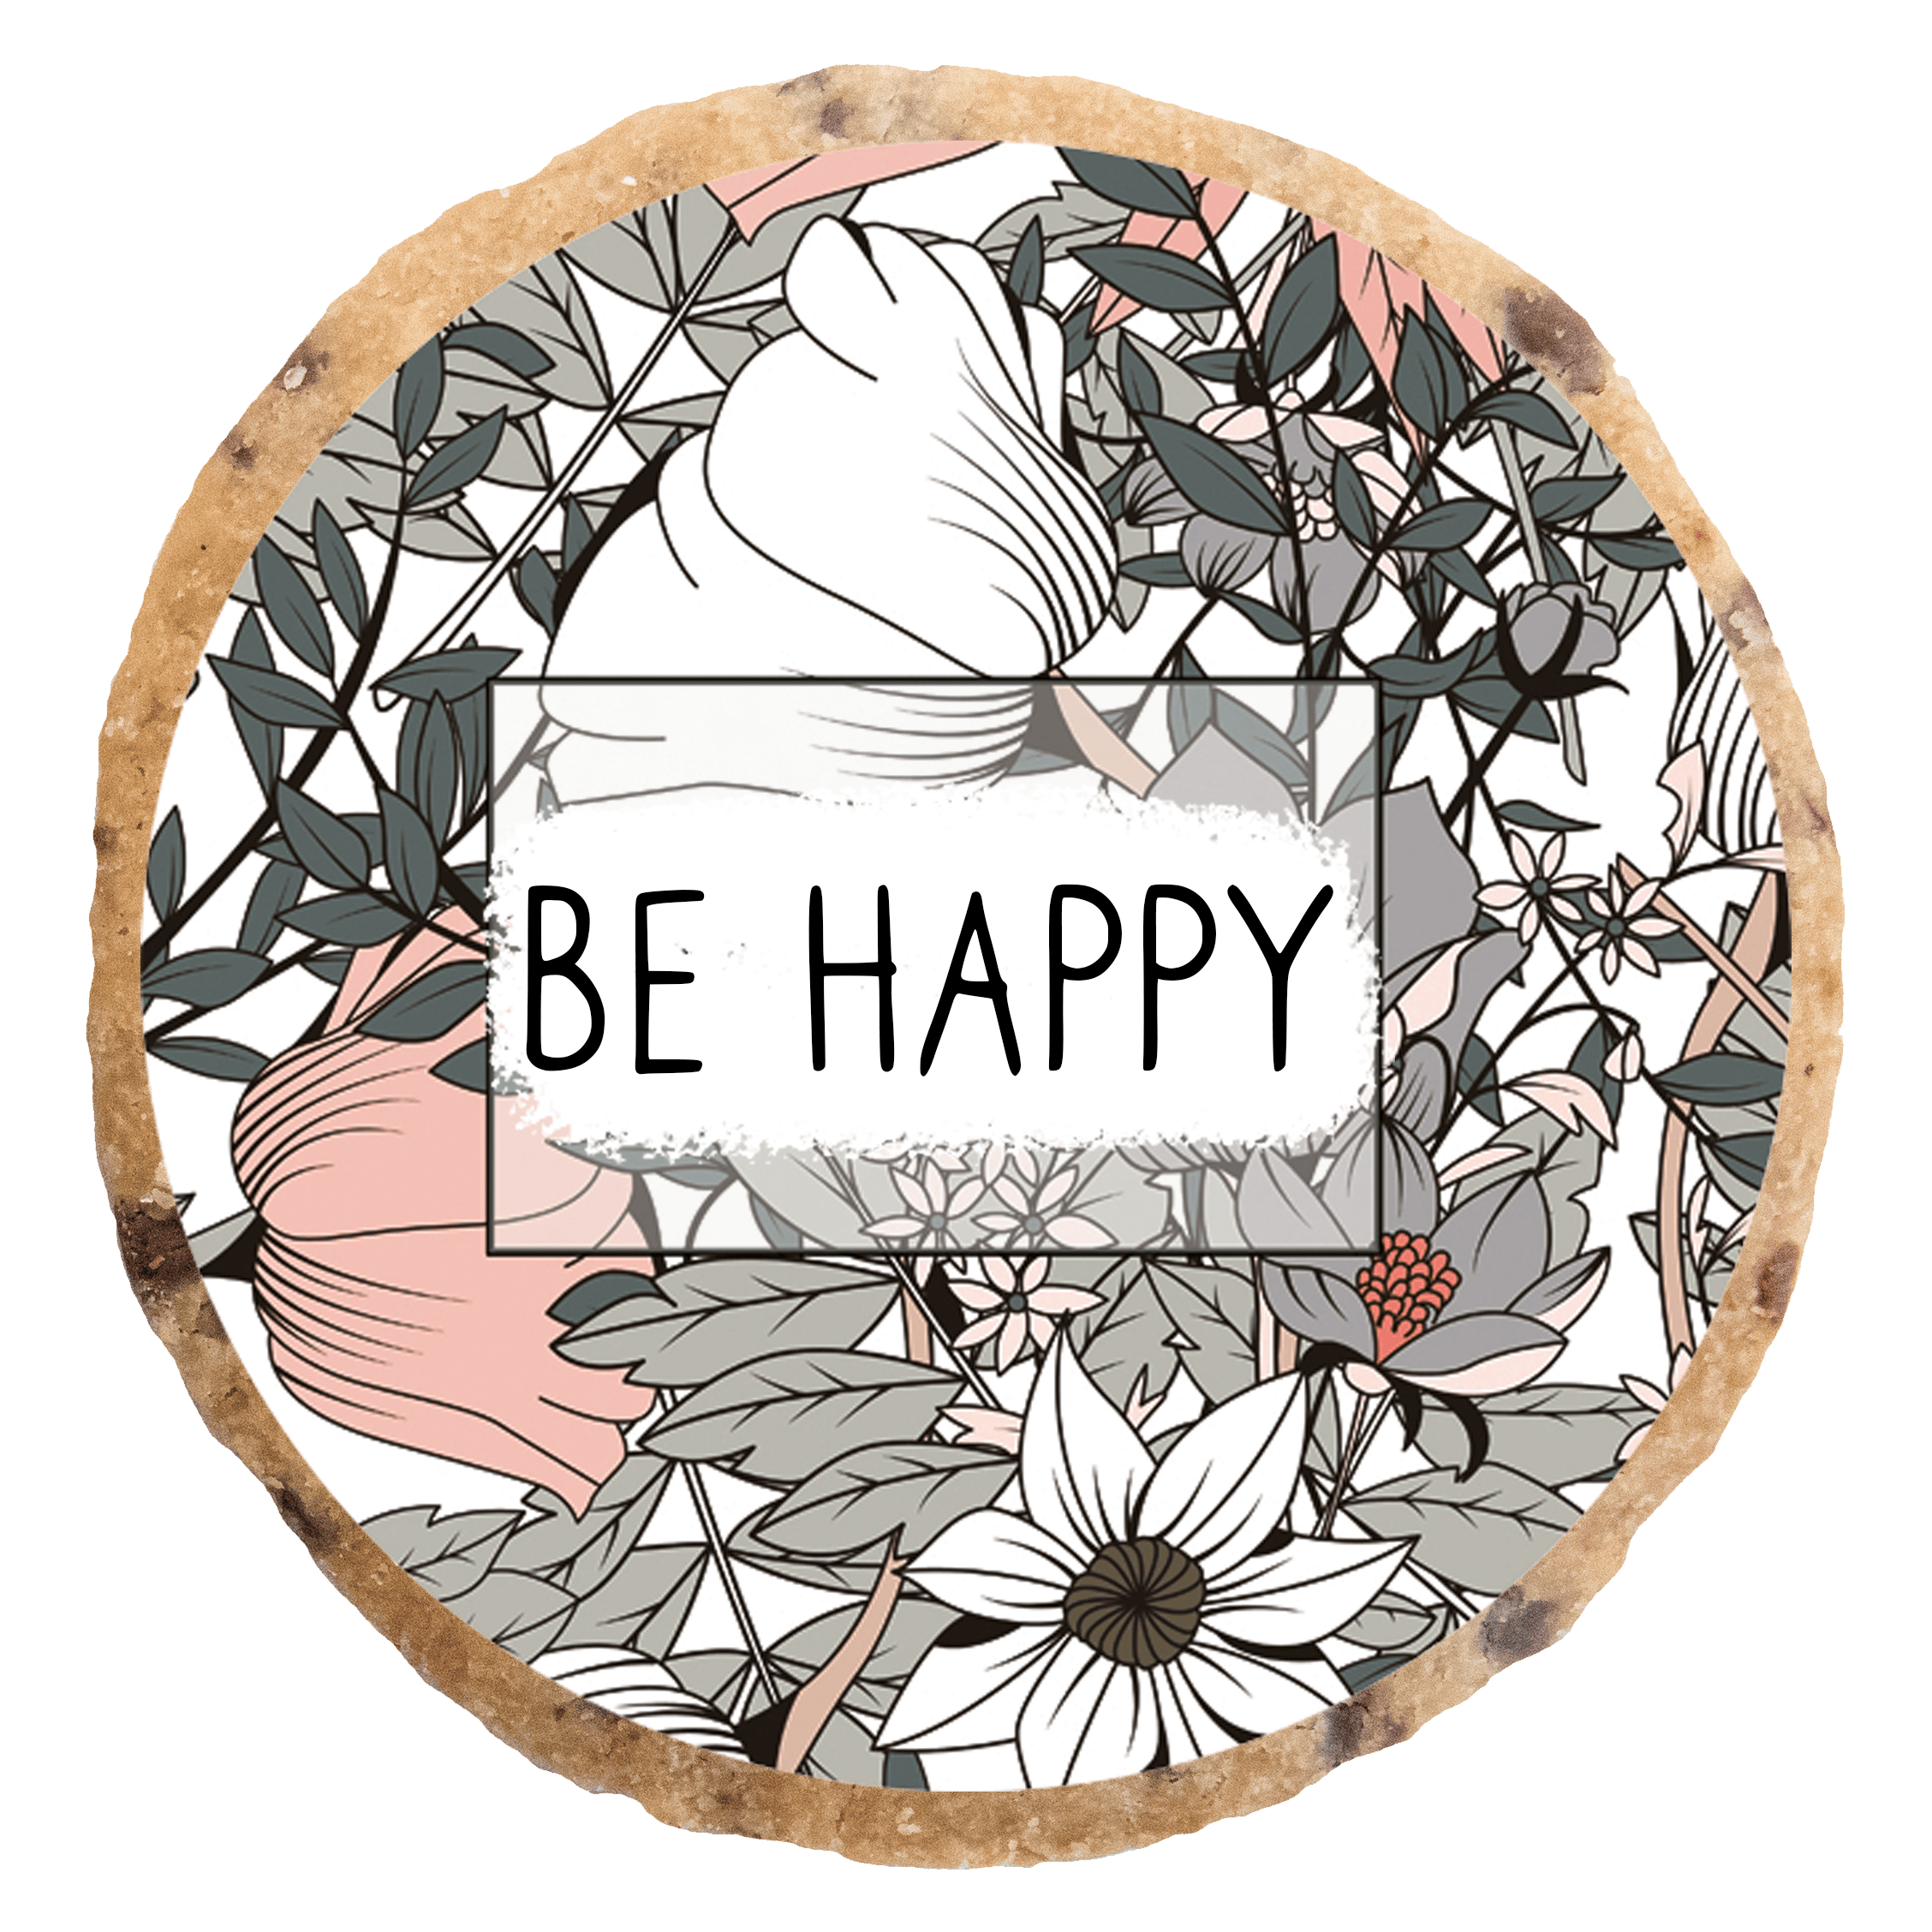 "Be happy" MotivKEKS